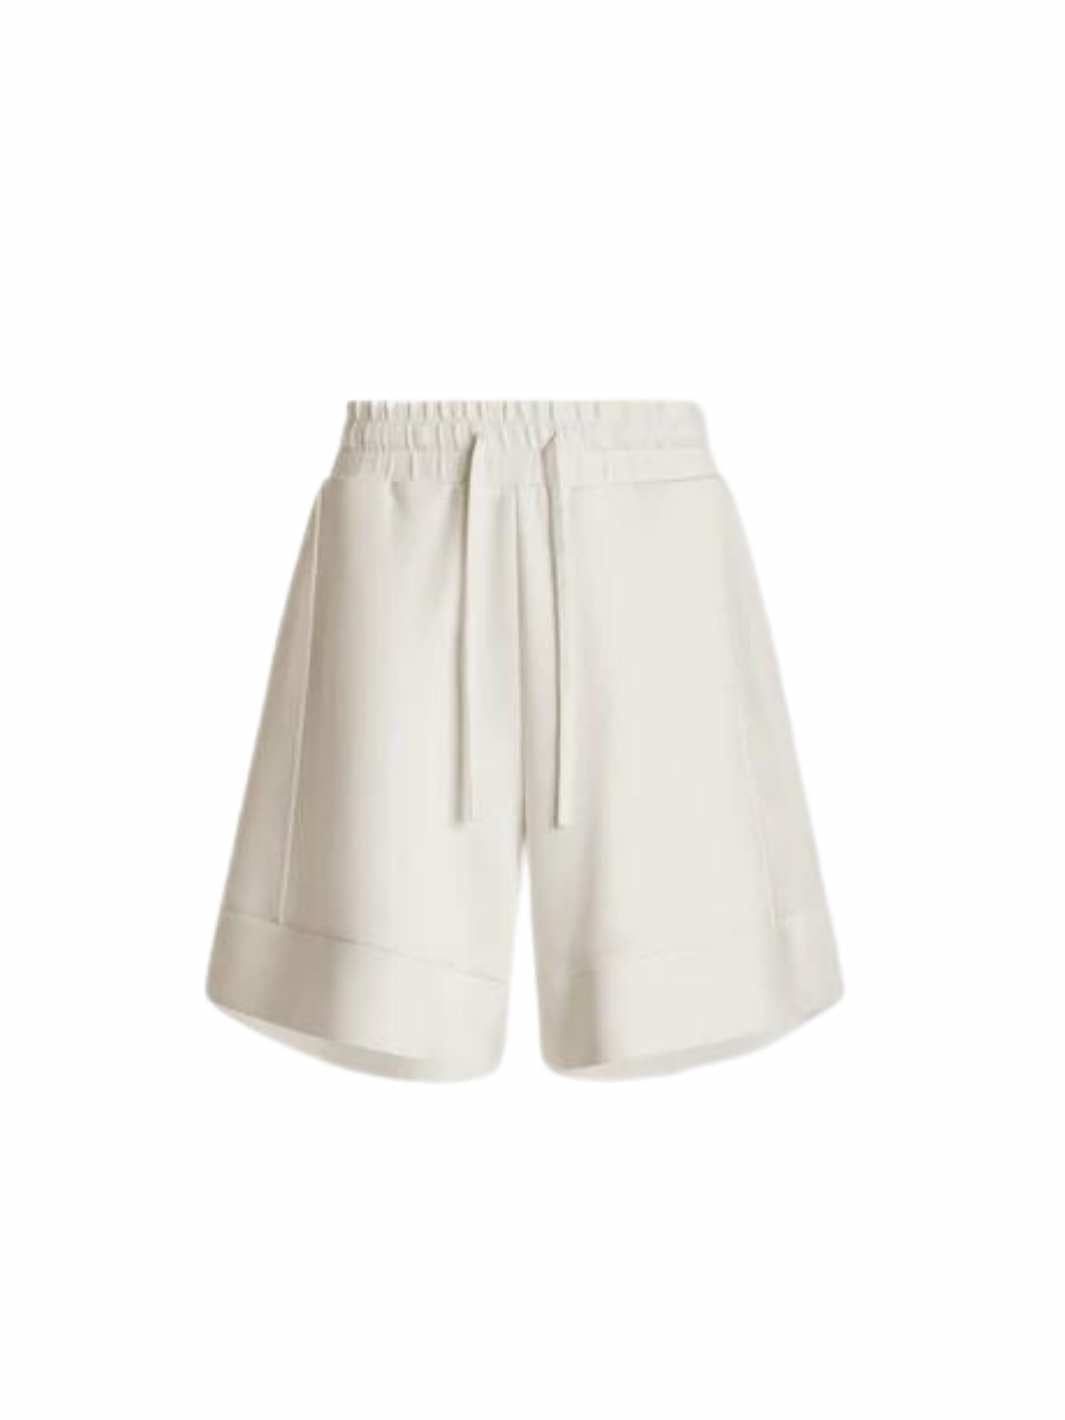 Varley Shorts Shorts | Alder Short Snow White